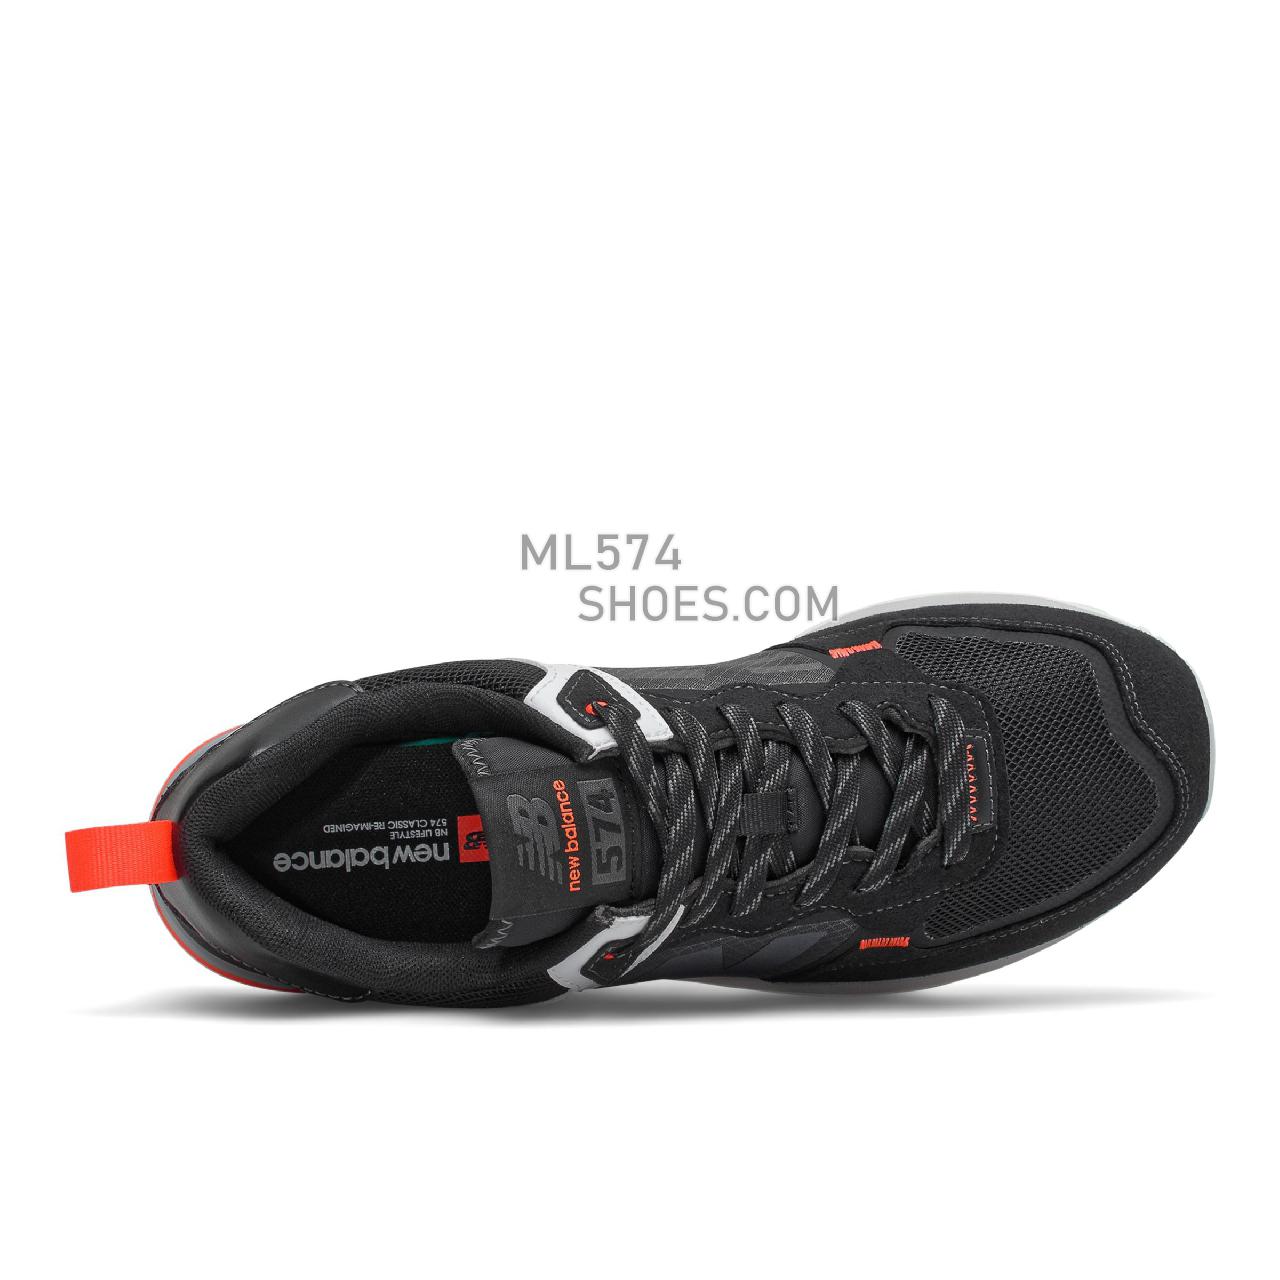 New Balance 574 - Men's Classic Sneakers - Black with Sugar Melon - ML574IL2